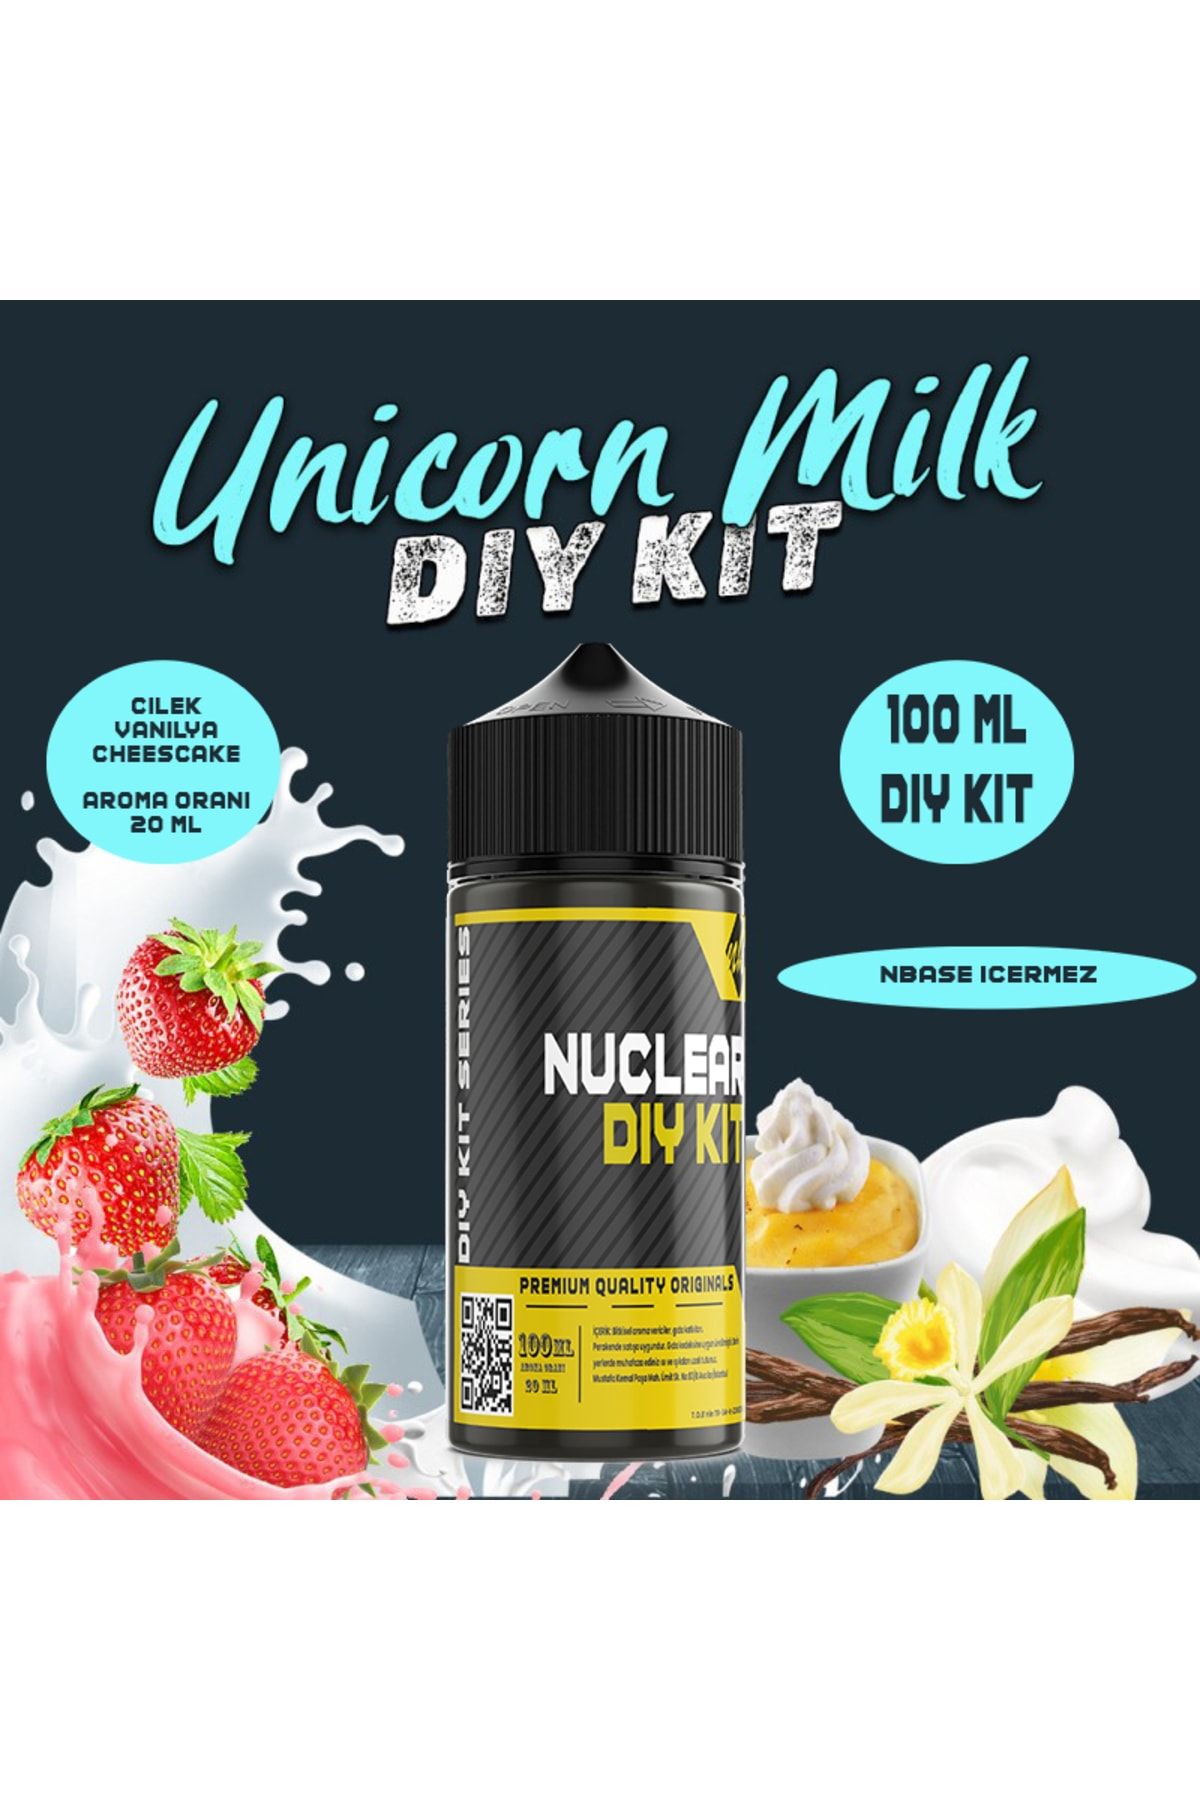 Nuclear Kimya Unicorn Milk - 100 ml Dıy Kit (ŞİŞEDE SADECE 20 ML AROMA VARDIR HAZIR DEĞİLDİR